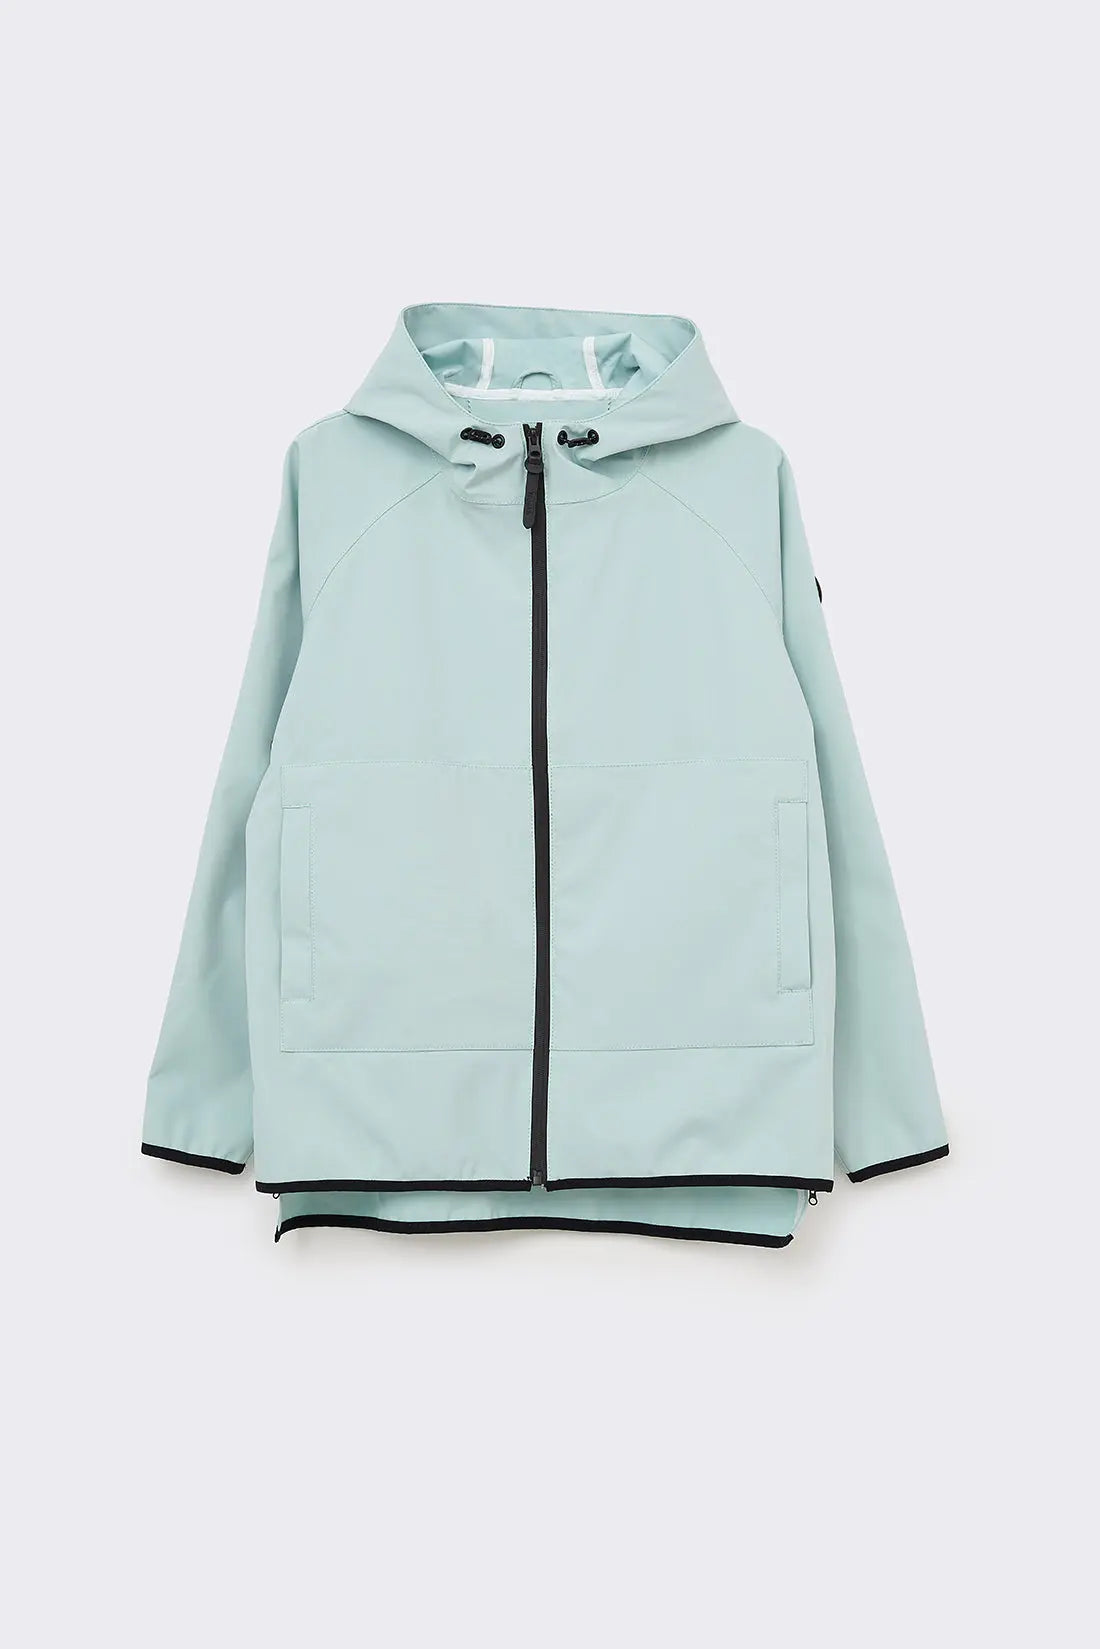 Nuevo chubasquero impermeable para mujer, chaqueta de bosque lluvioso y al  aire libre para mujer – Los mejores productos en la tienda online Joom Geek